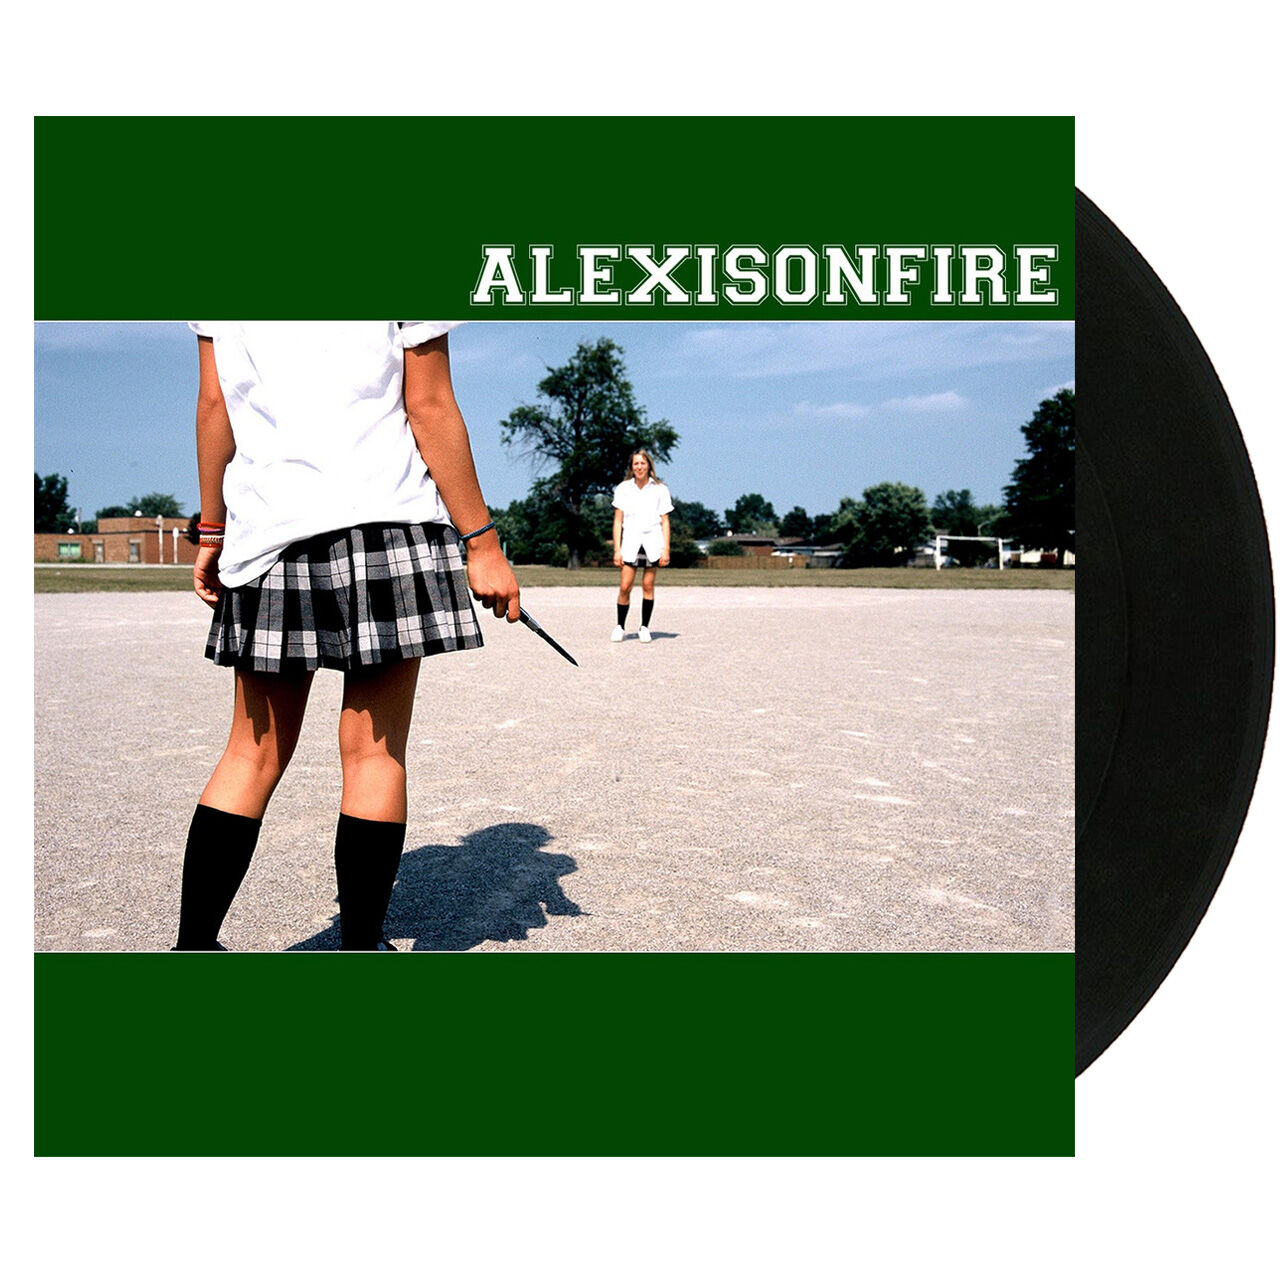 ALEXISONFIRE Alexisonfire Black 2LP Vinyl